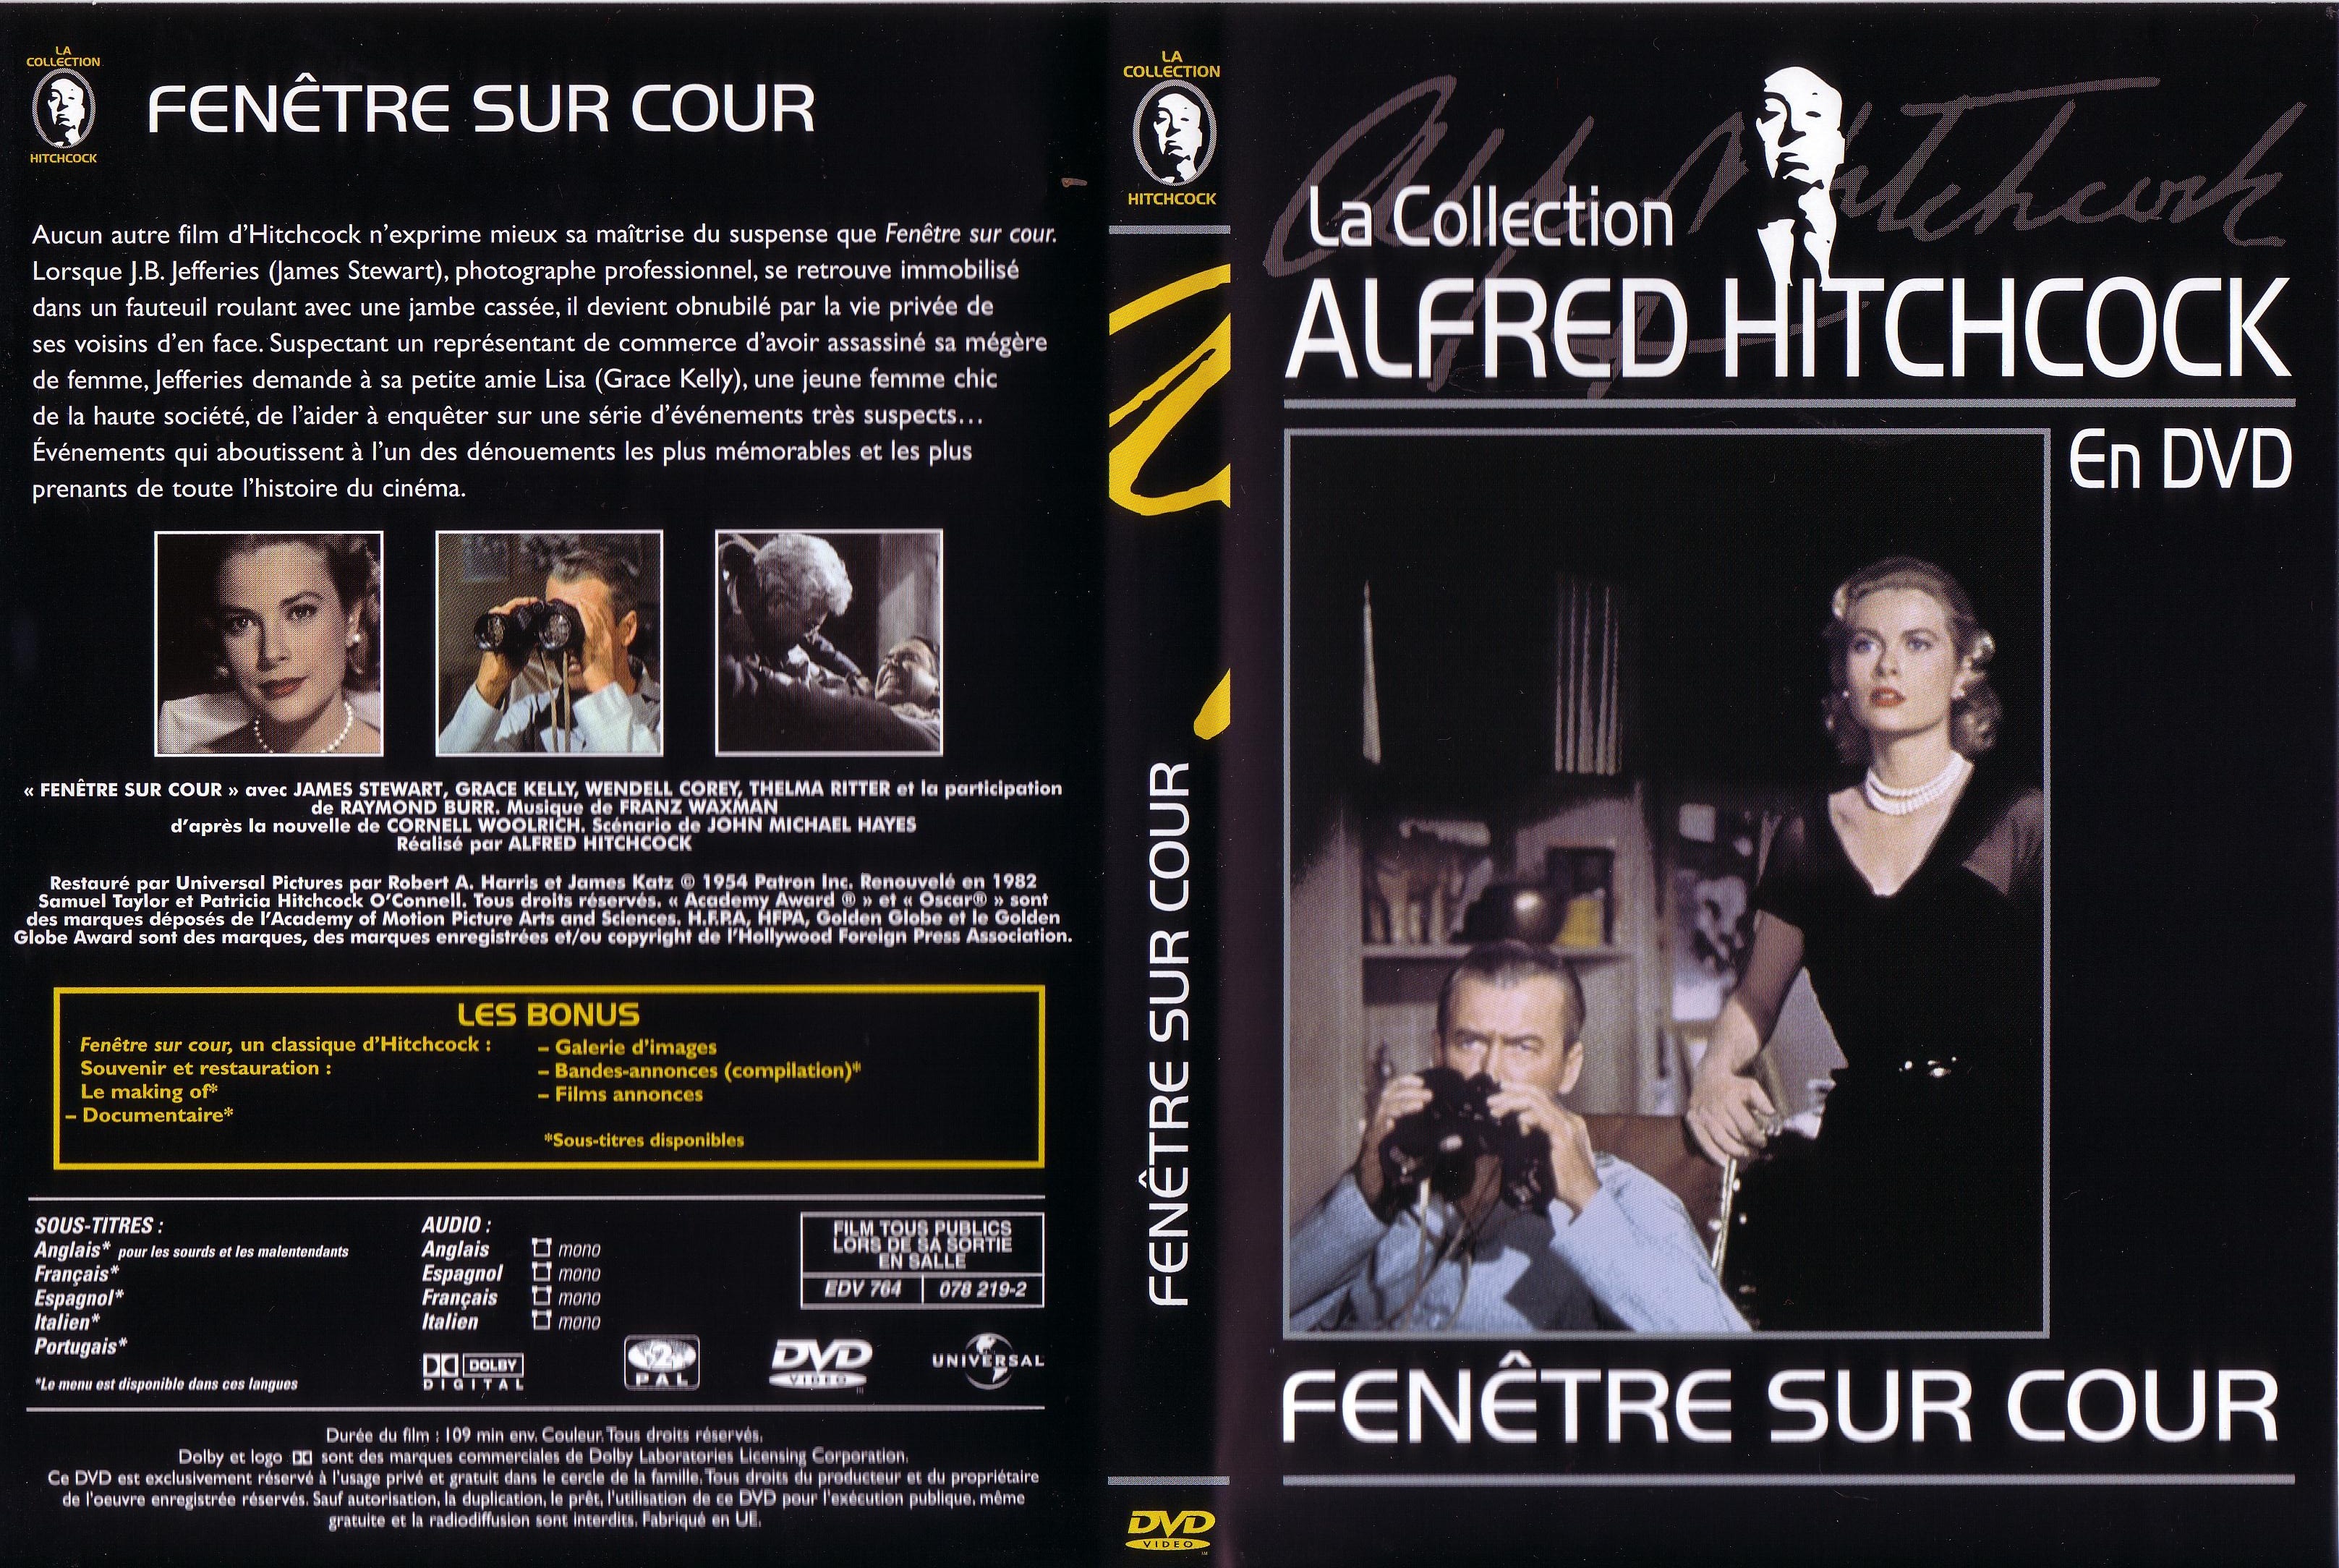 Jaquette DVD Fenetre sur cour (Hitchcock)